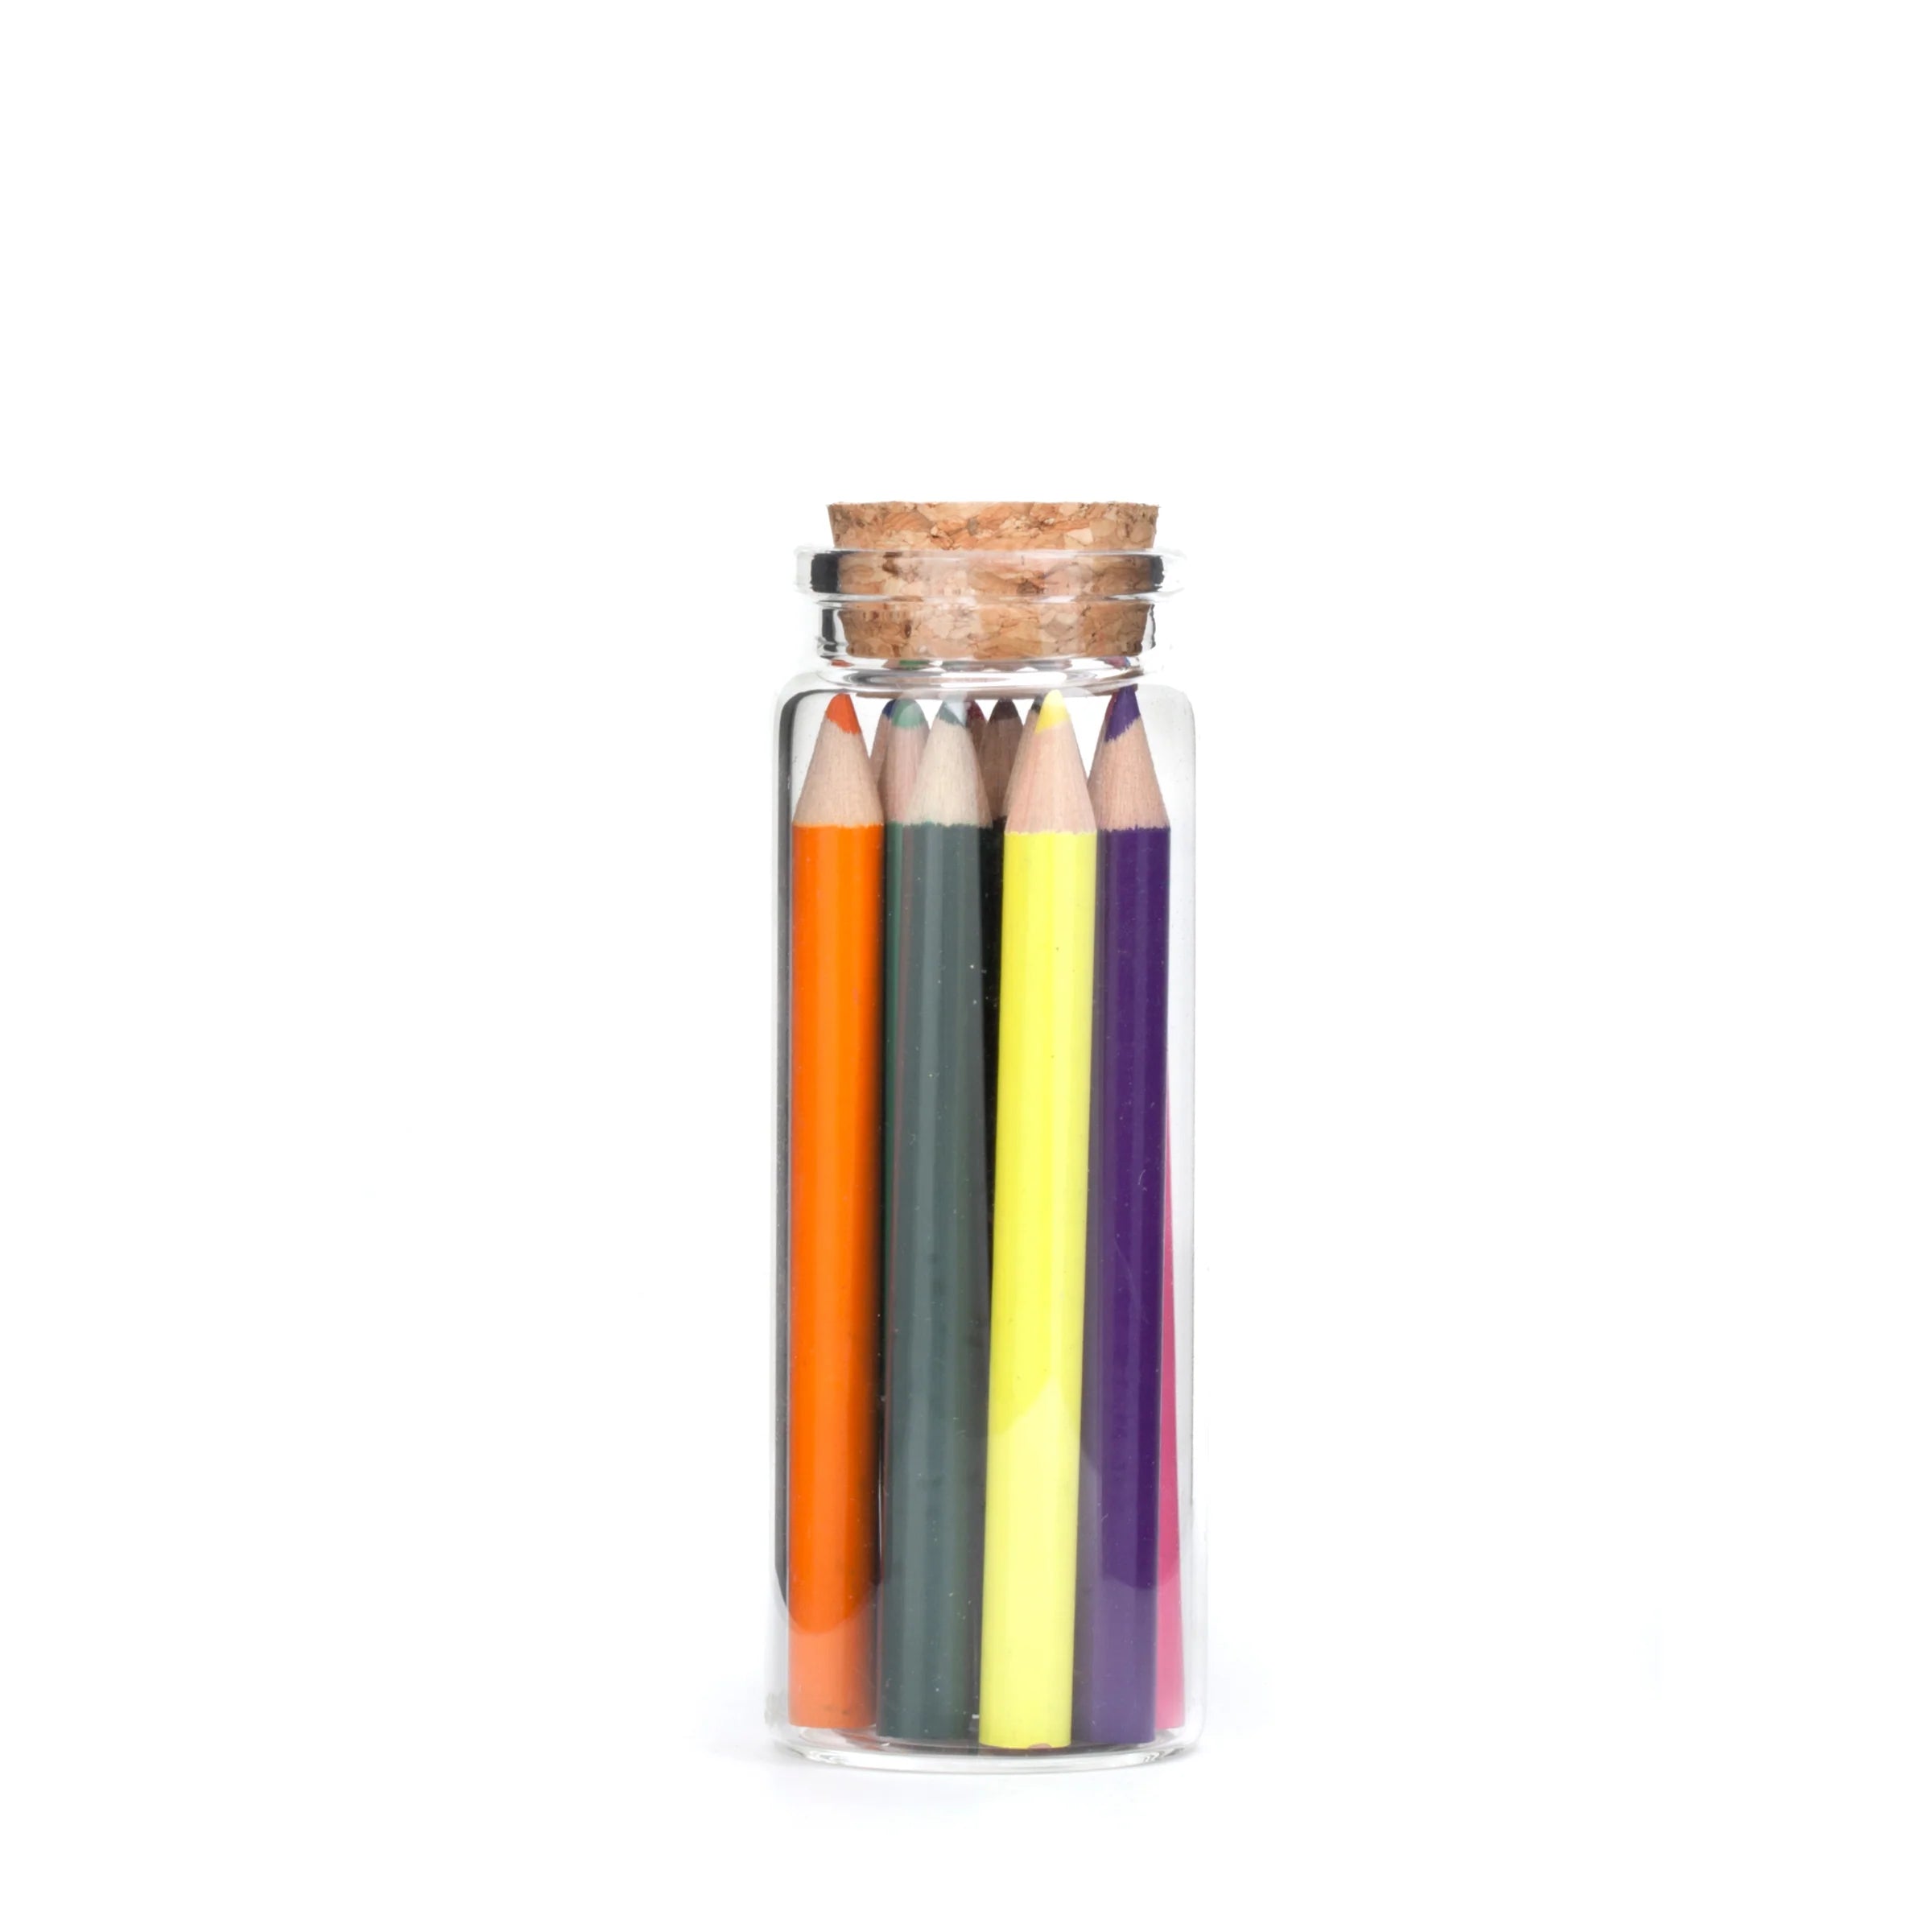 Mini Colored Pencils in a Glass Jar